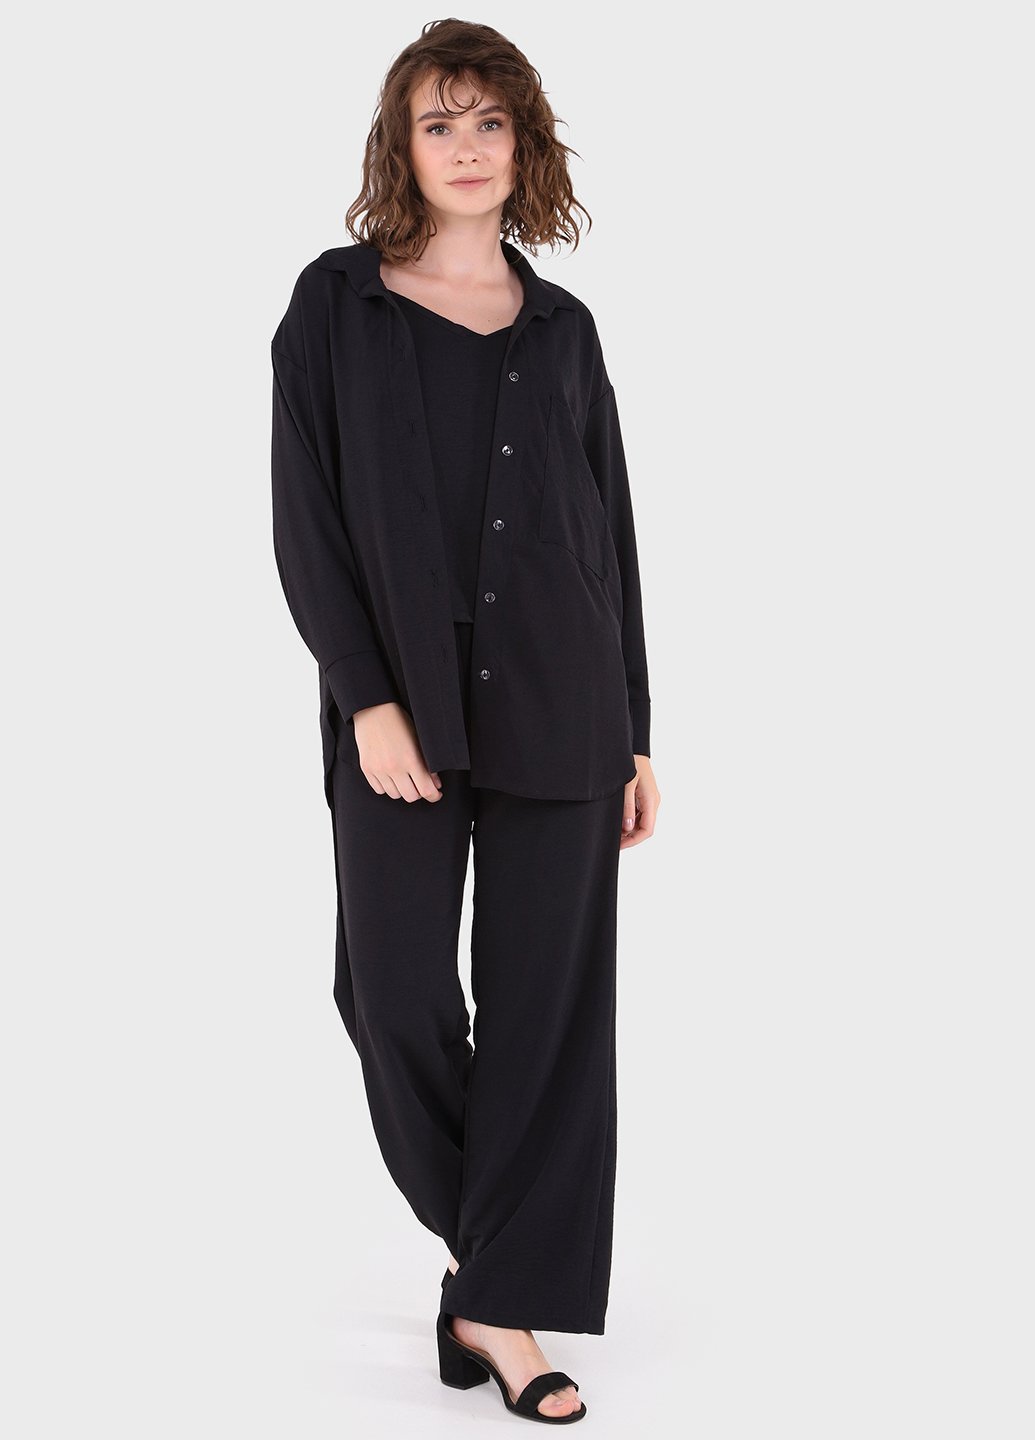 Купить Модный летний костюм женский черного цвета Merlini Тройка 100000129, размер 42-44 в интернет-магазине